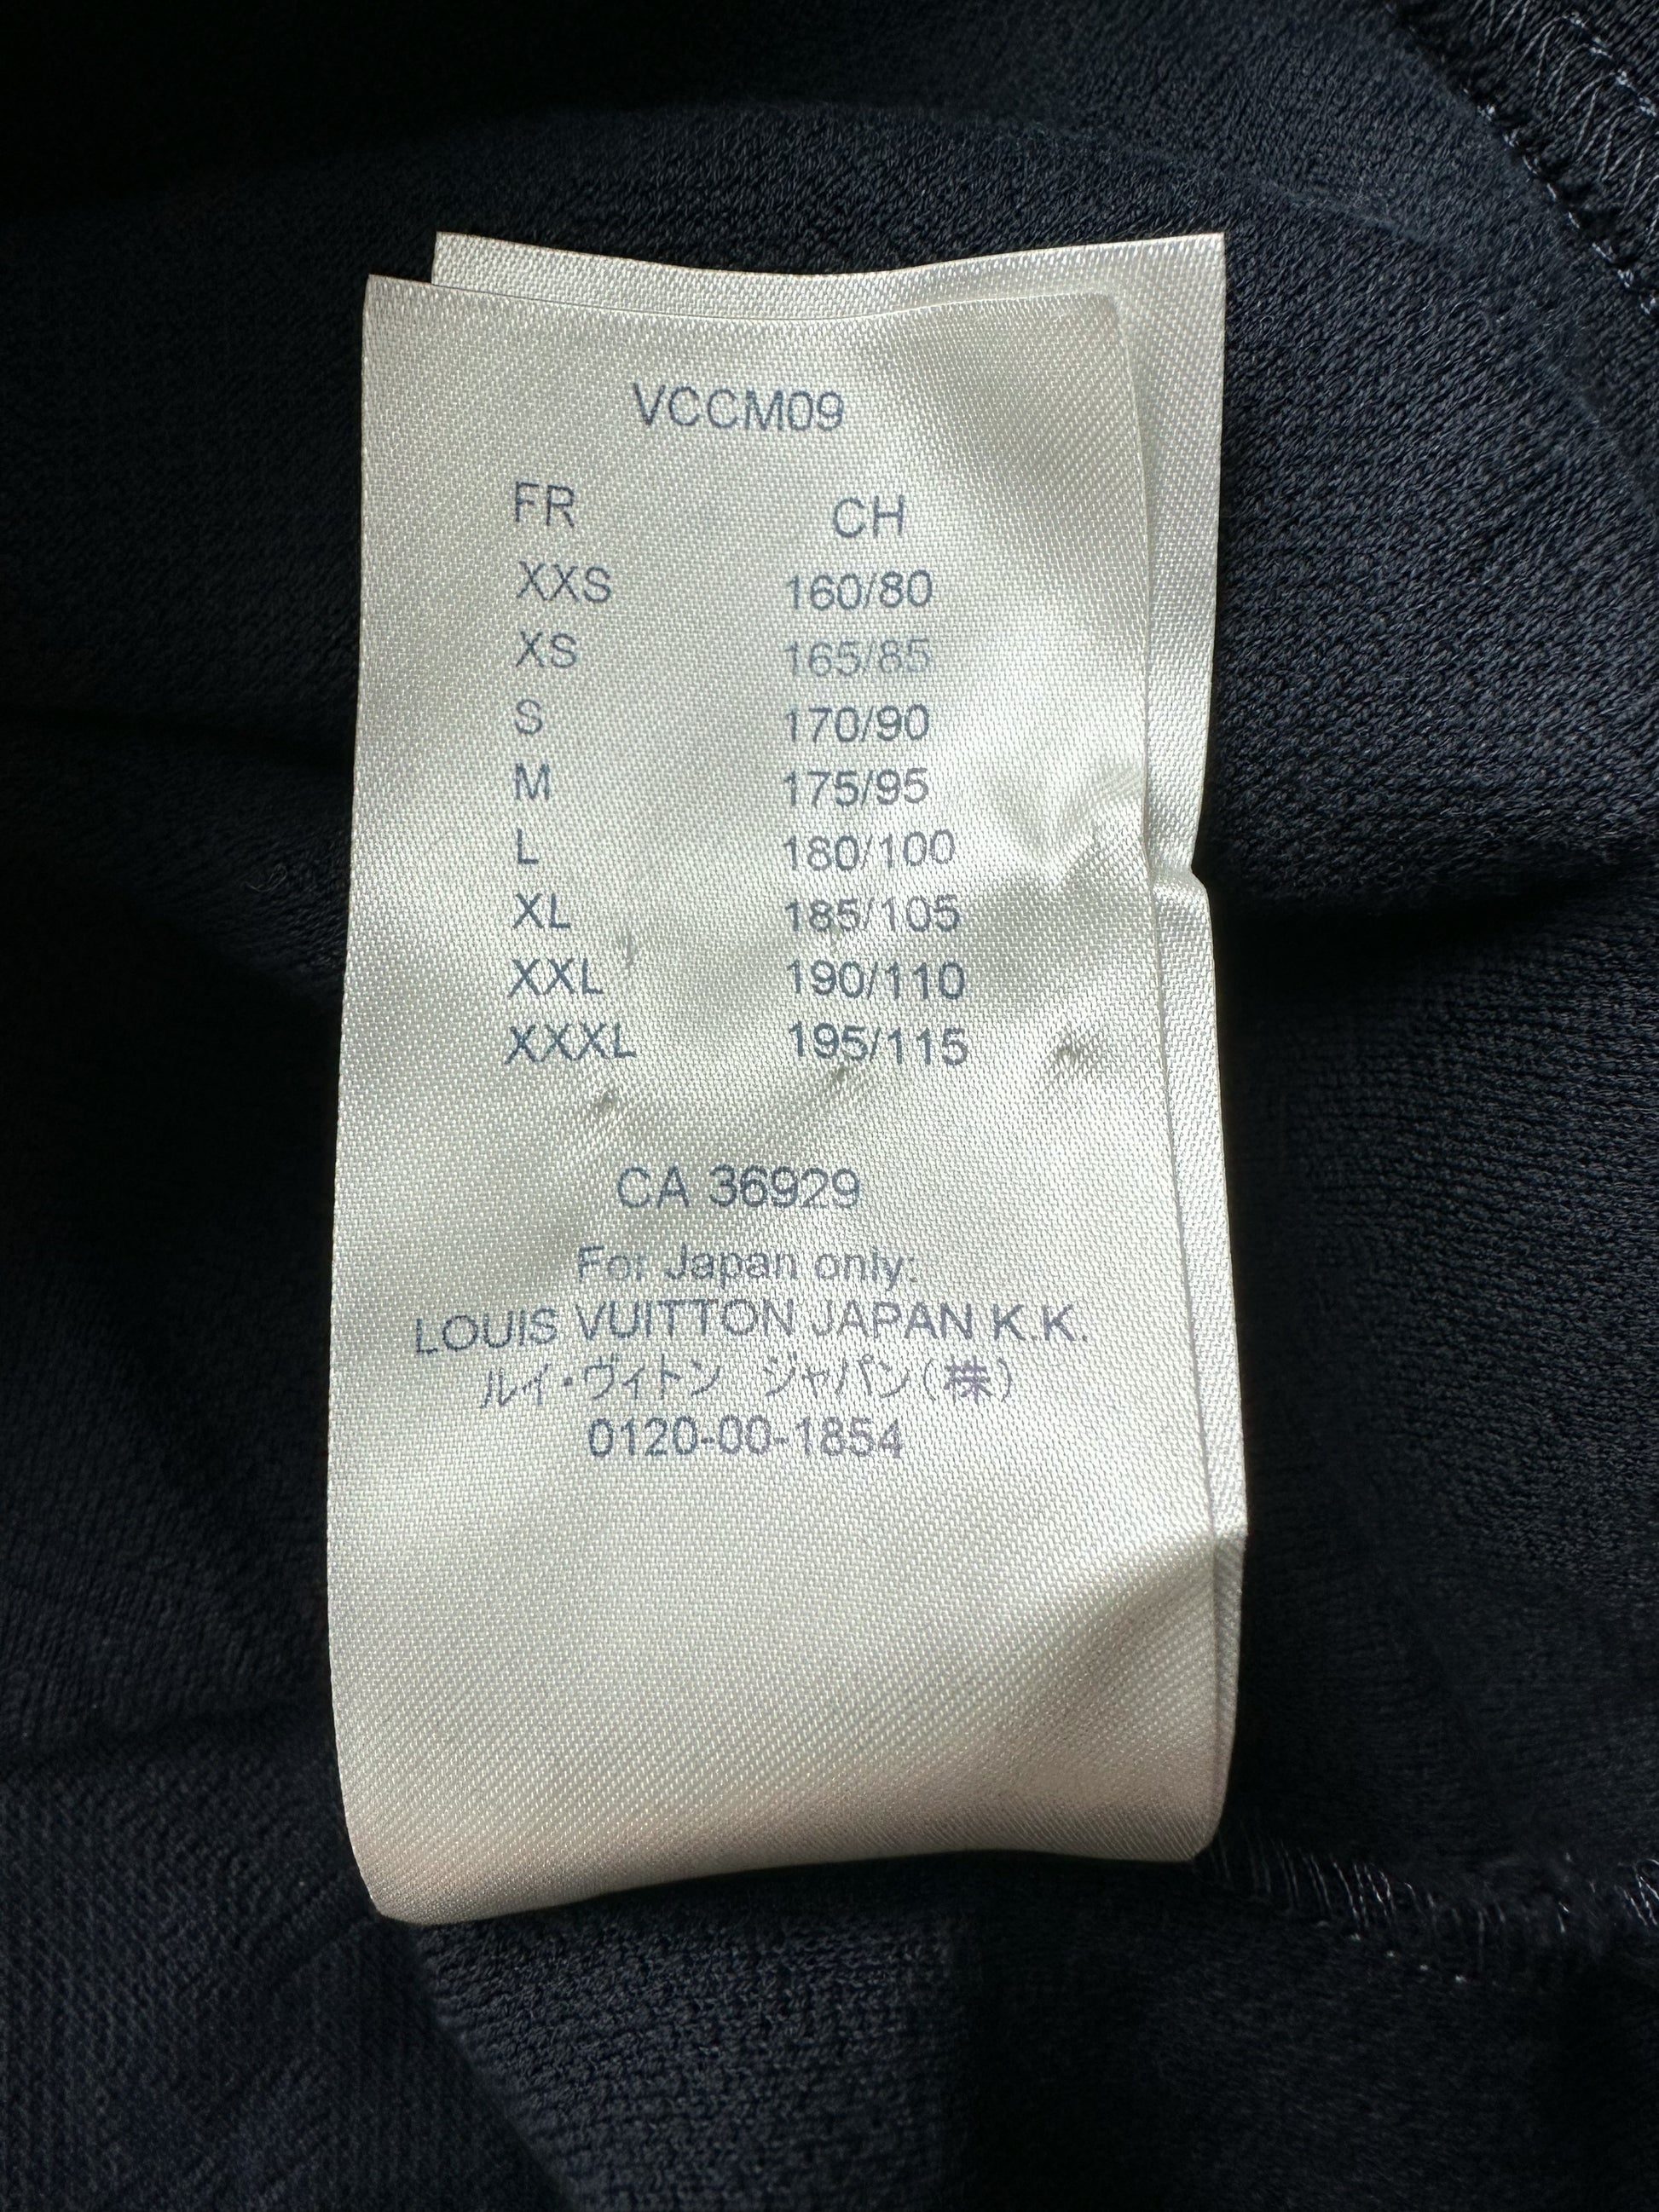 Louis Vuitton Navy Monogram Pocket T-Shirt